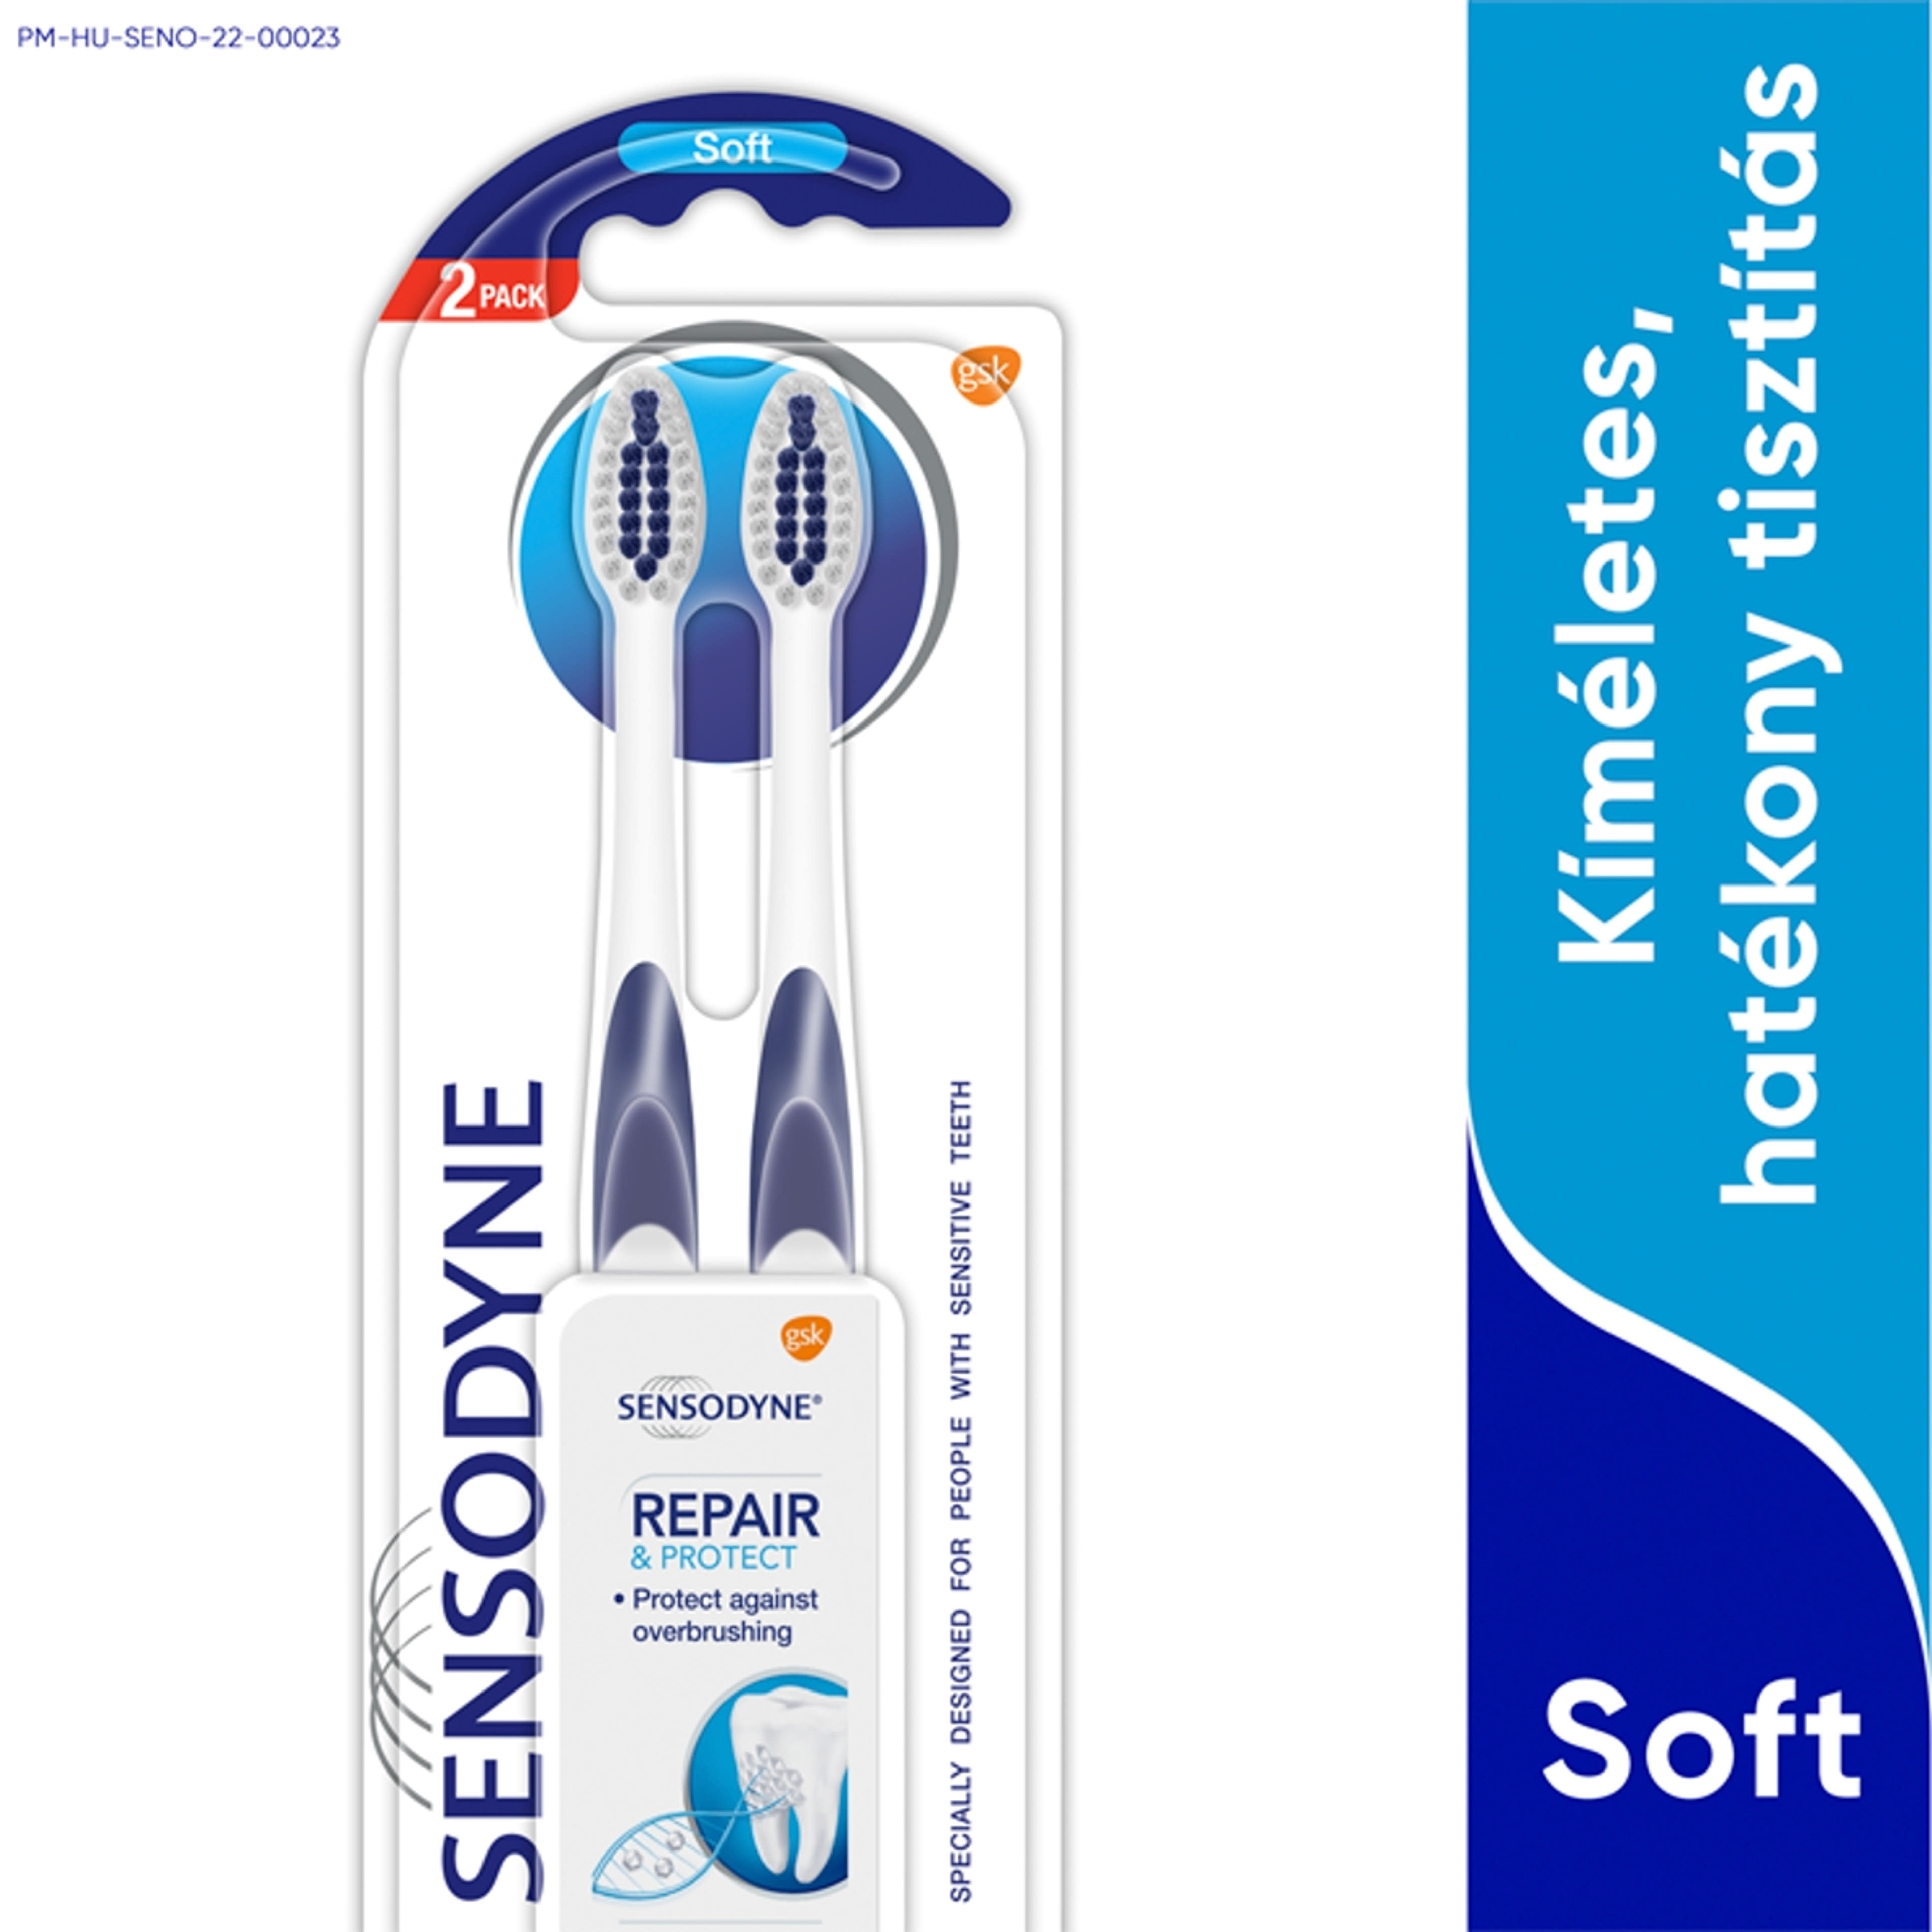 Sensodyne Repair & Protect Soft Duopack fogkefe - 2 db